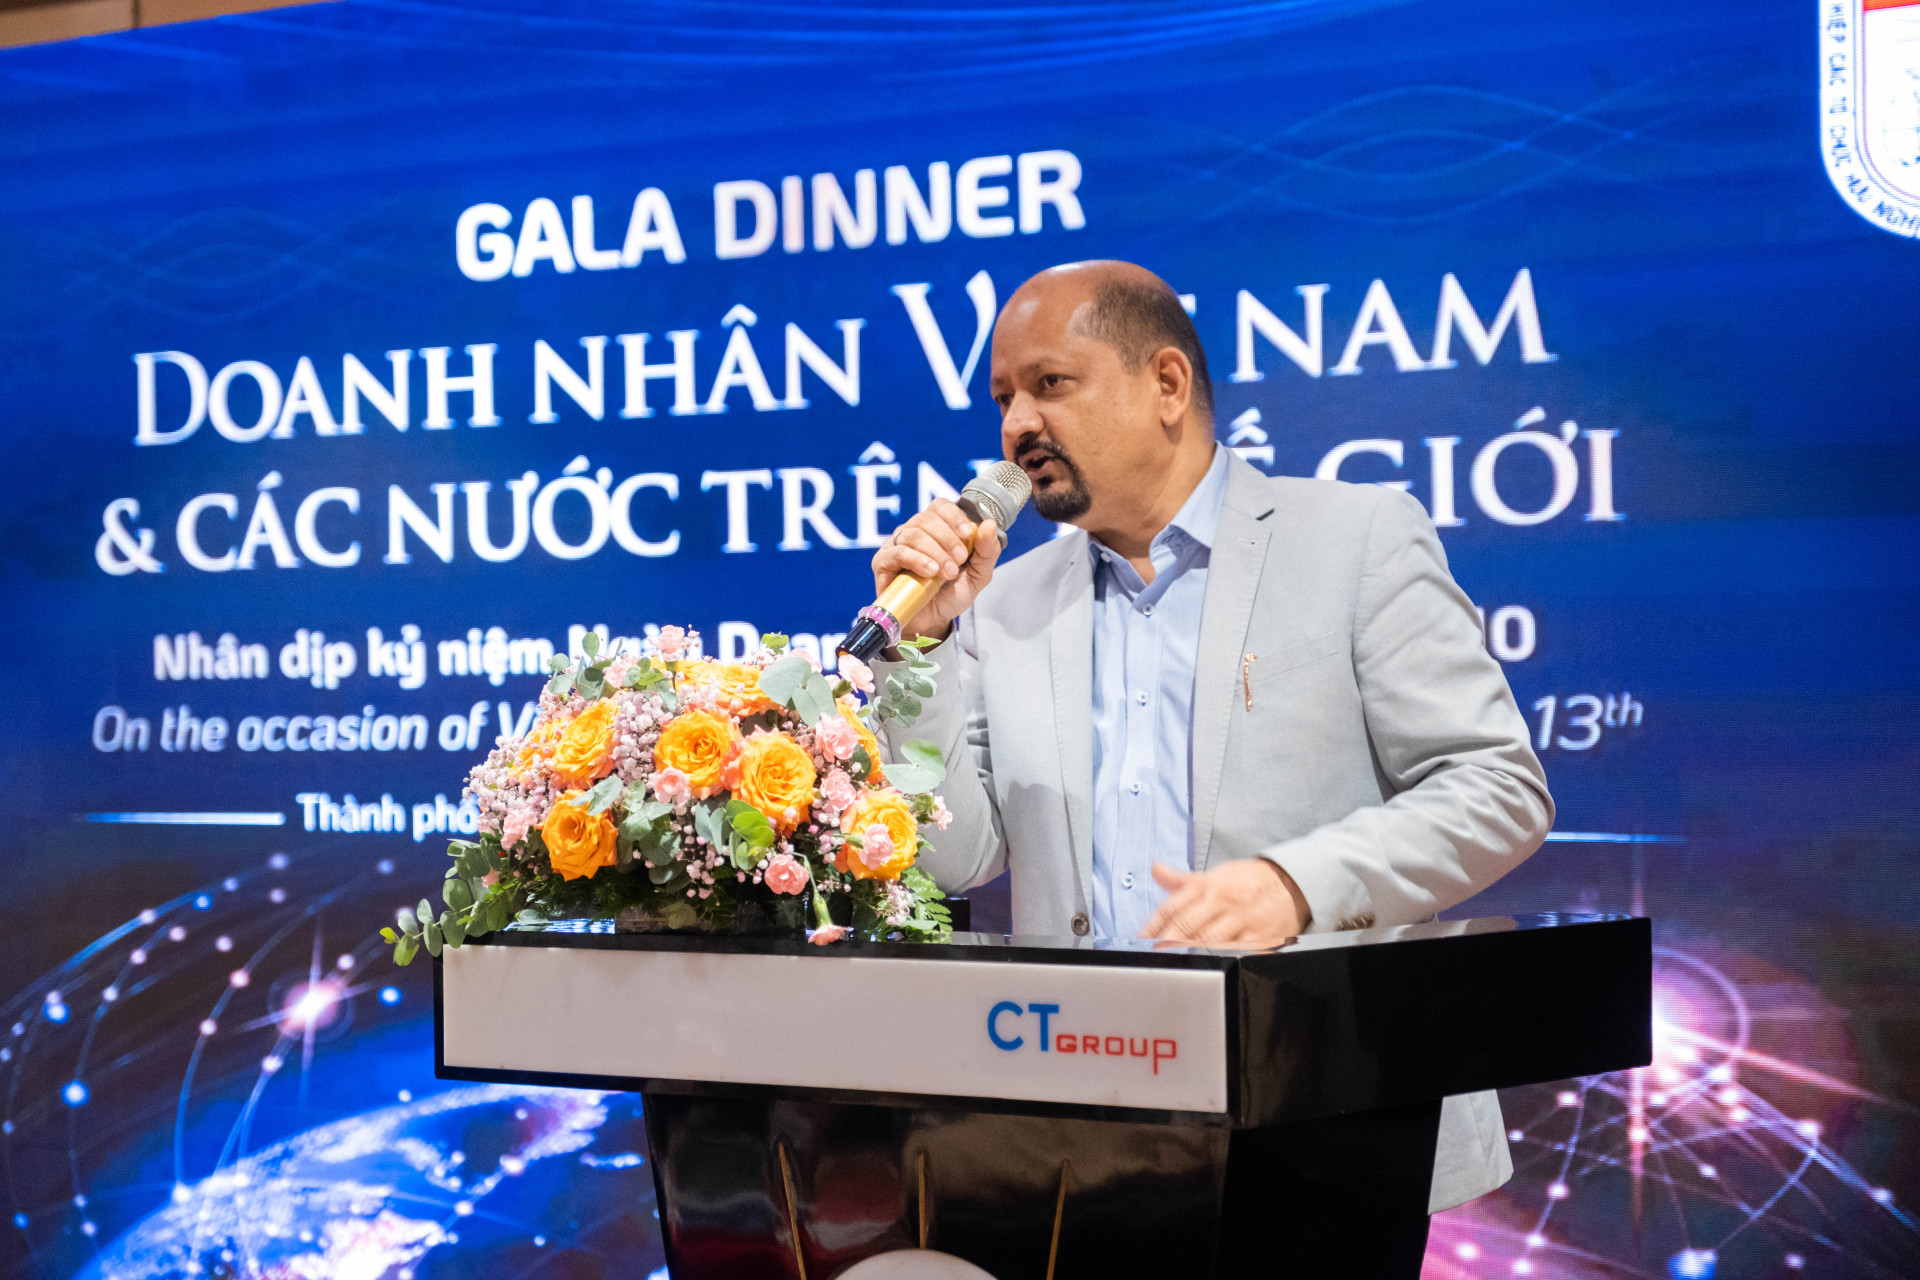 Chủ tịch Hiệp hội doanh Nghiệp Ấn độ tại Việt Nam (InCham) cảm ơn CT Group đã tạo cơ hội giao lưu giữa các doanh nhân.